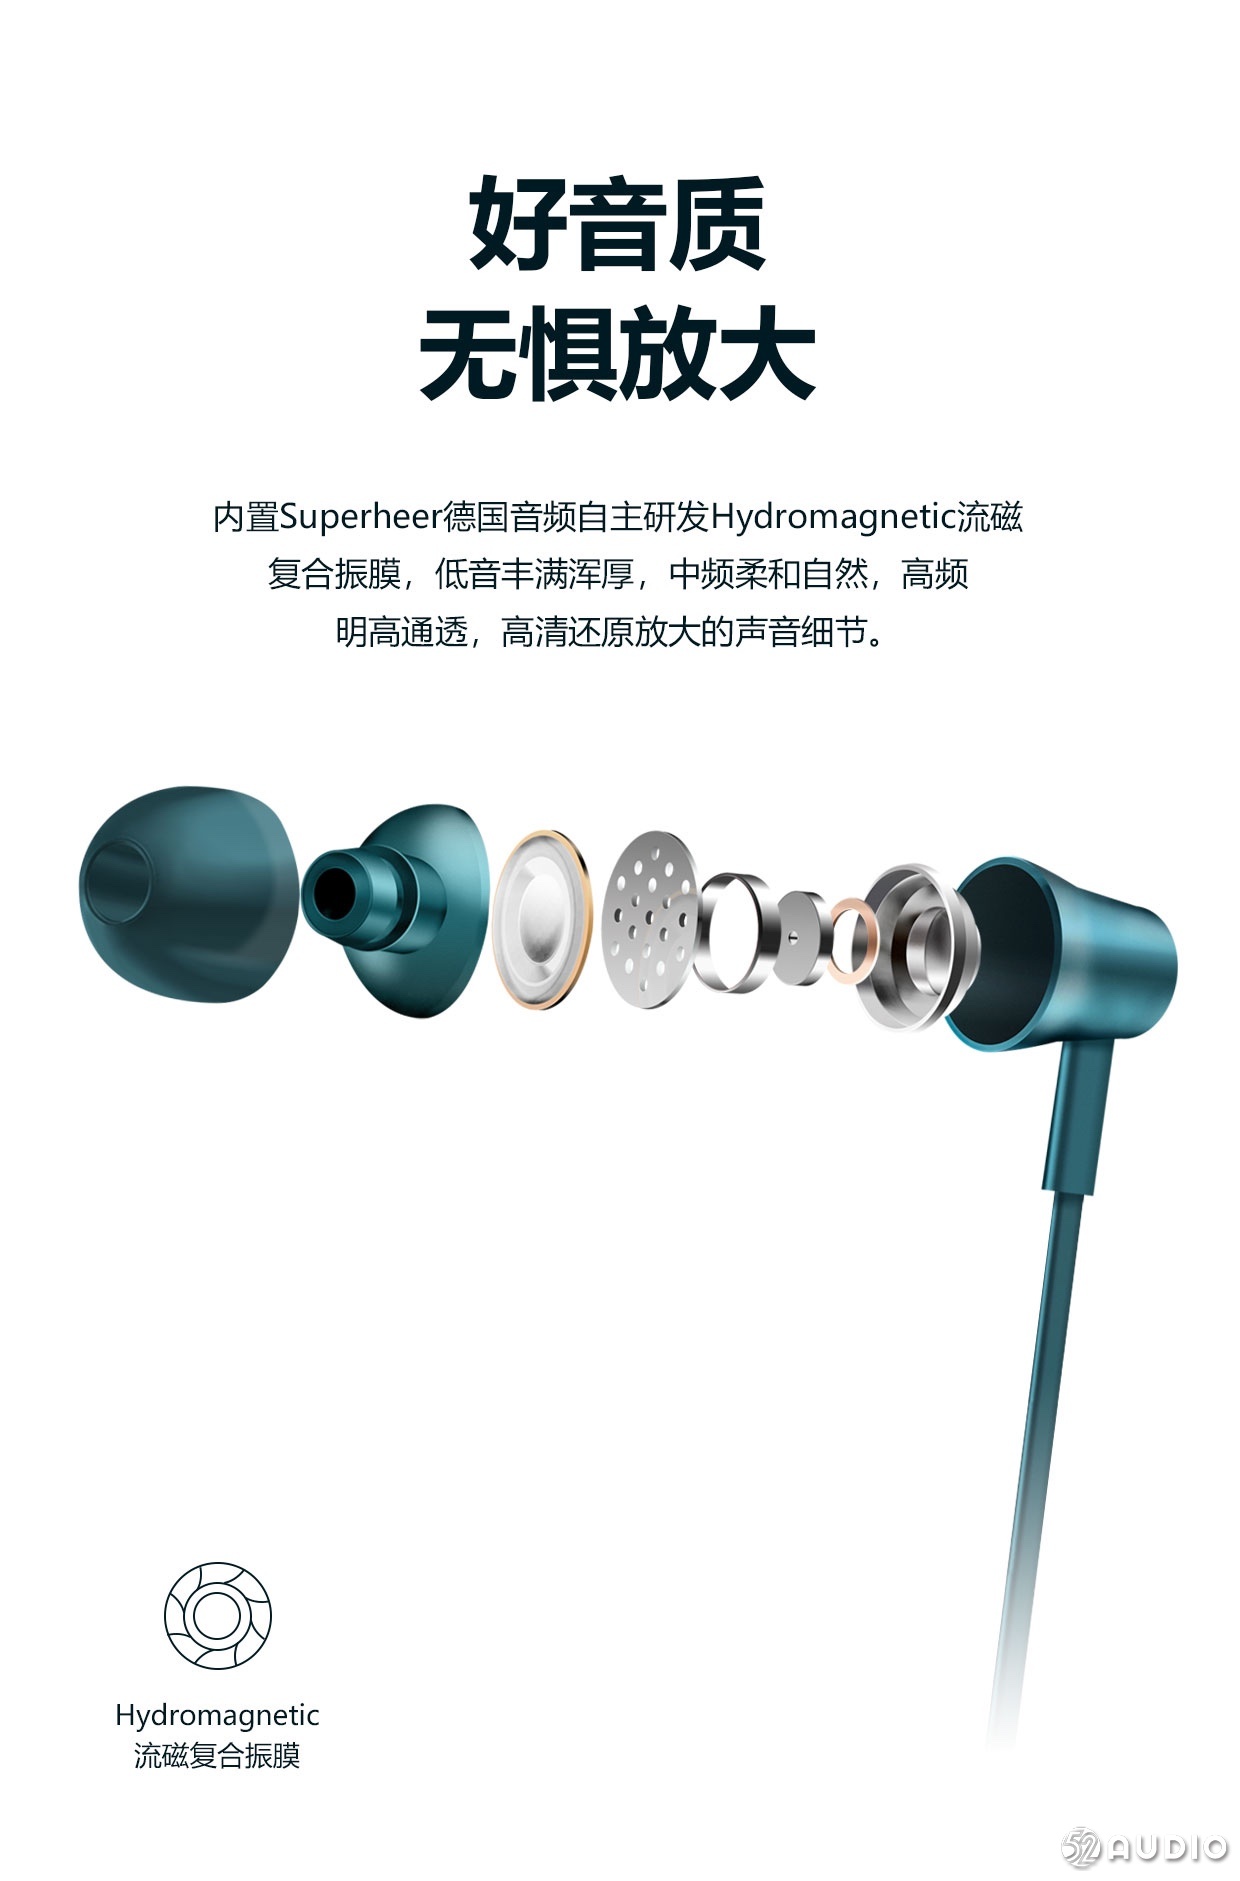 舒赫Superheer首款颈挂式无线蓝牙耳机NT3上市-我爱音频网